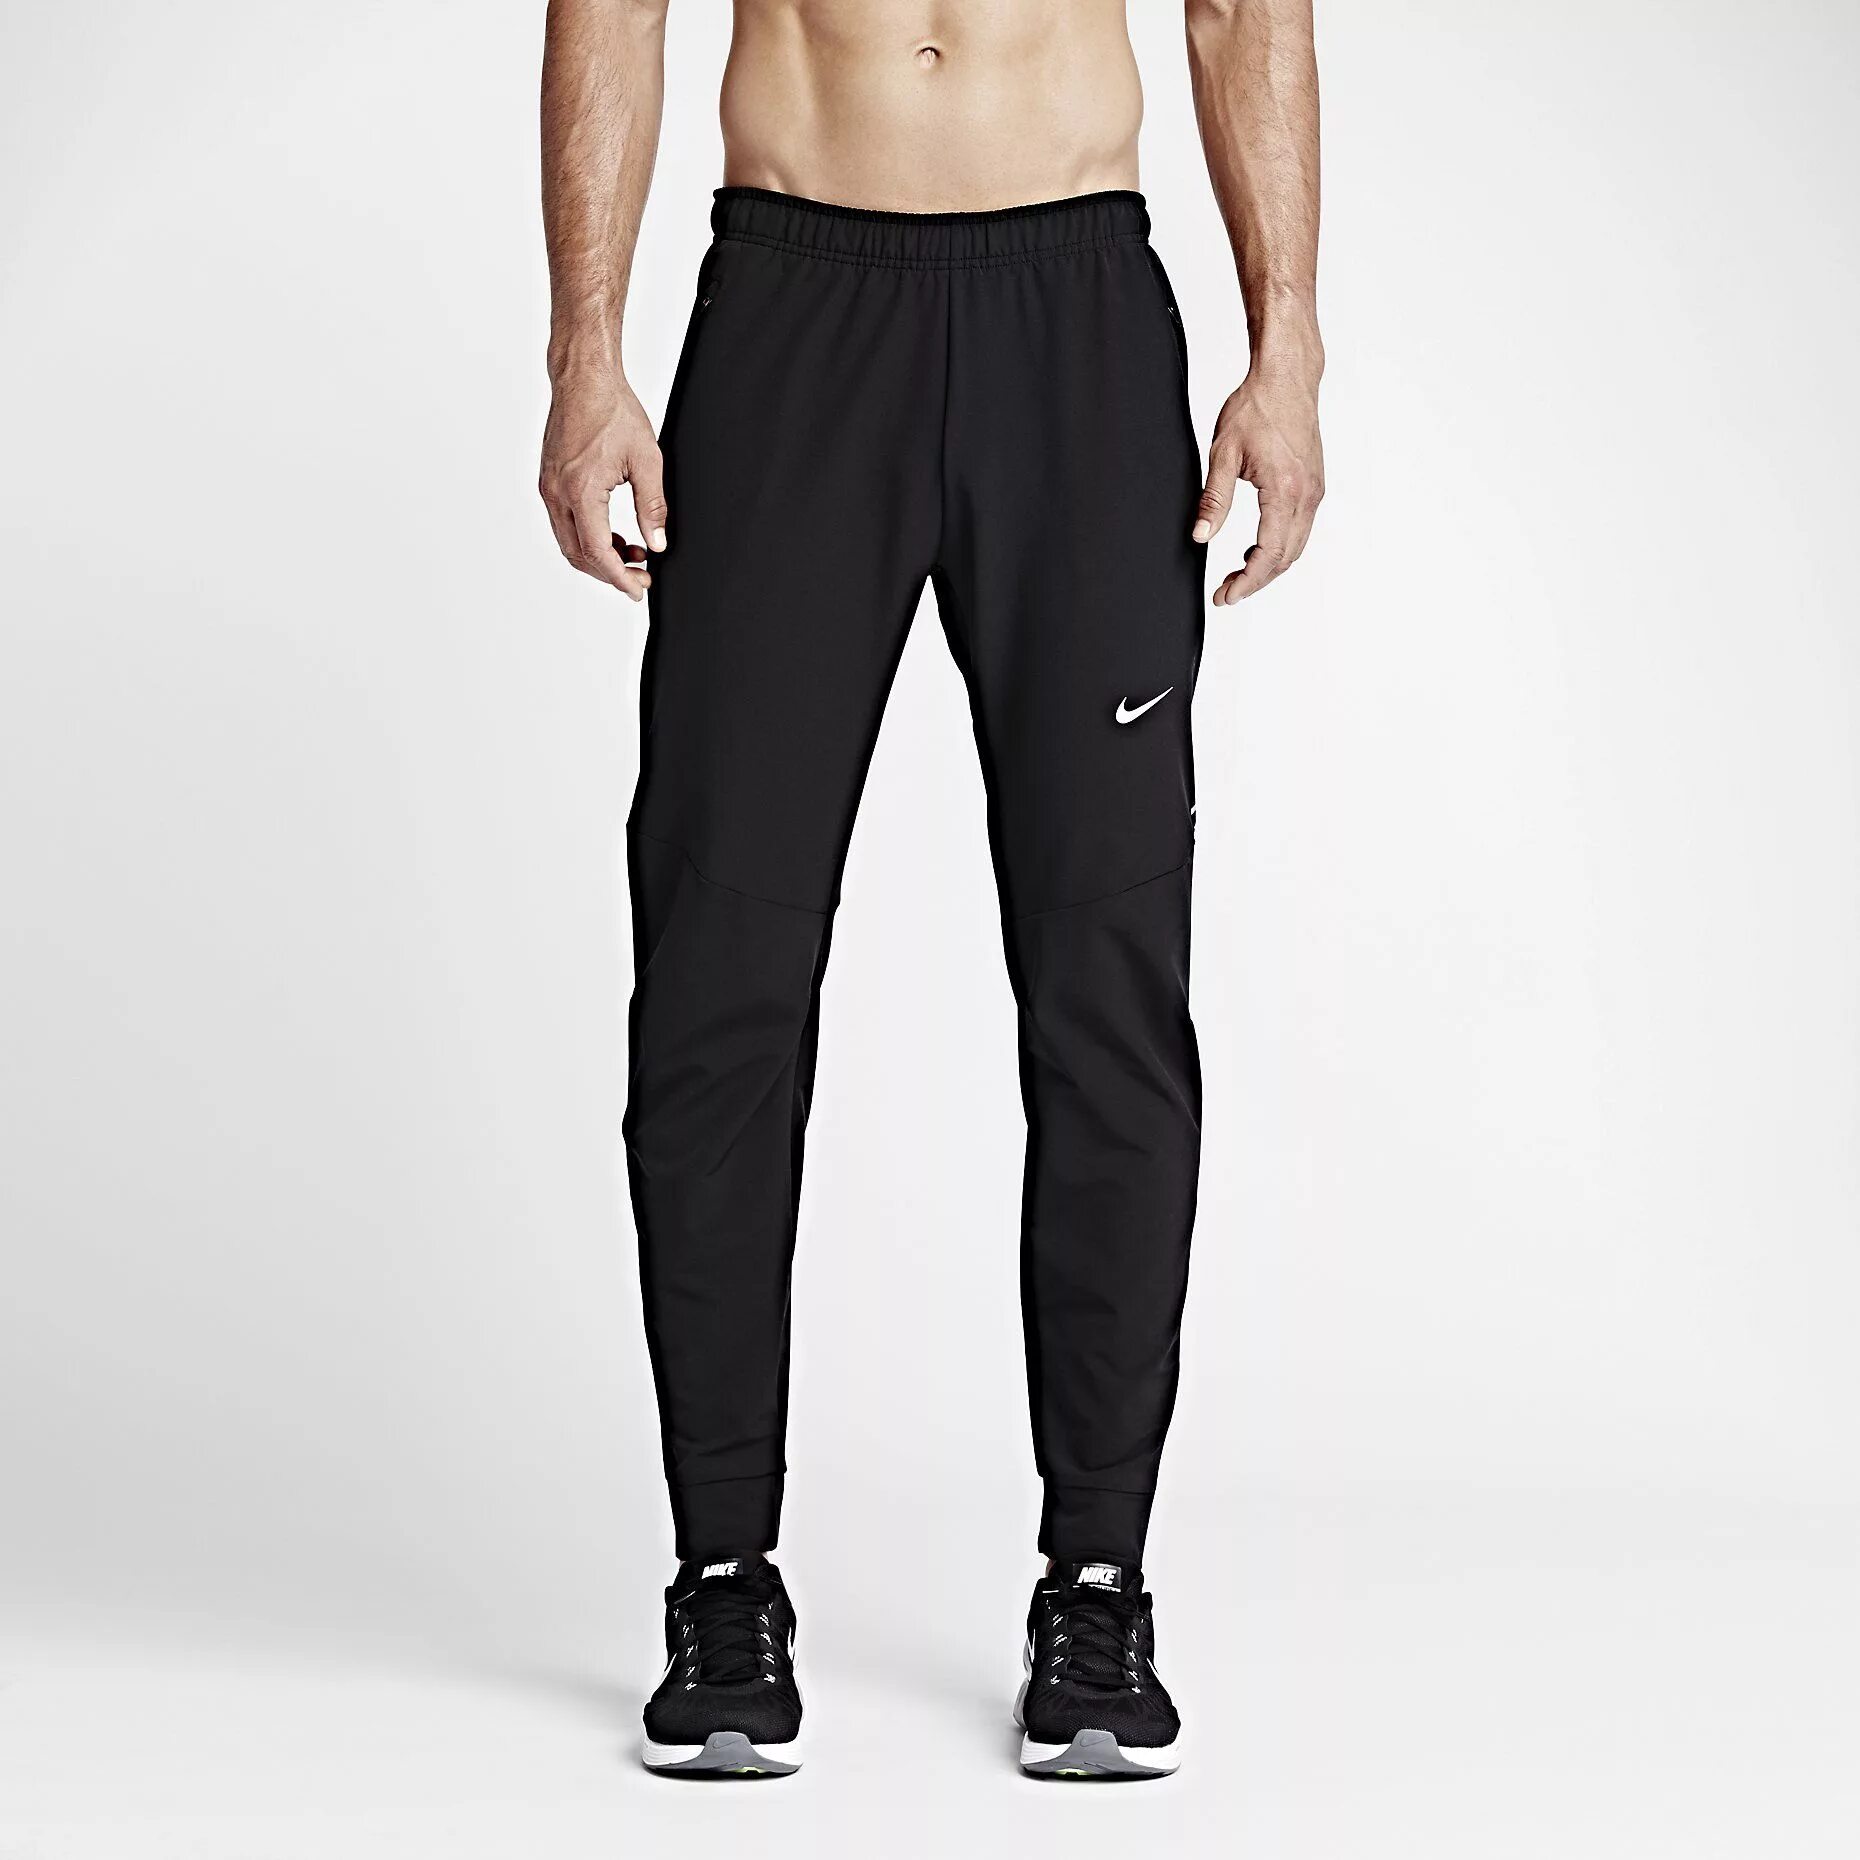 Nike Dri-Fit Pants. Трико Nike Dri-Fit. Nike Dri Fit штаны. Черные штаны Nike Dri-Fit. Черные штаны найк